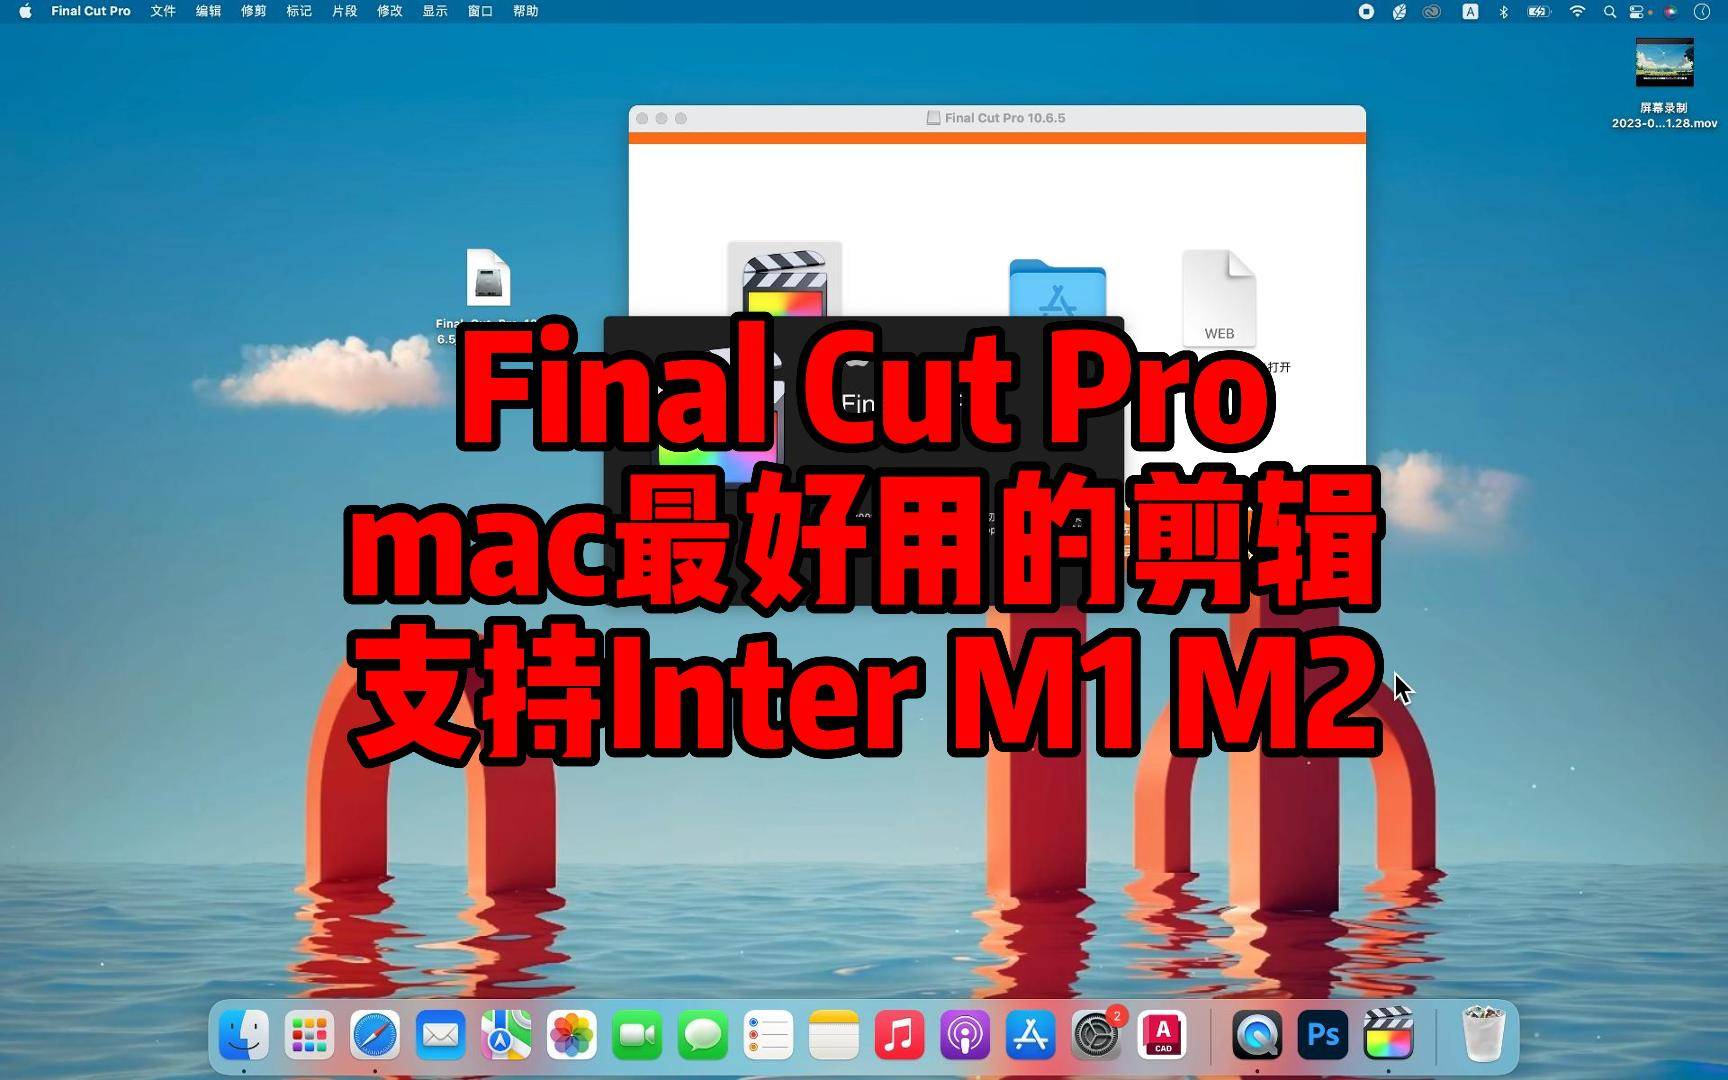 迷你学堂反诈骗下载苹果版:Final Cut Pro 10.6.5 Mac中文版下载，mac电脑最好用的视频音频剪辑工具